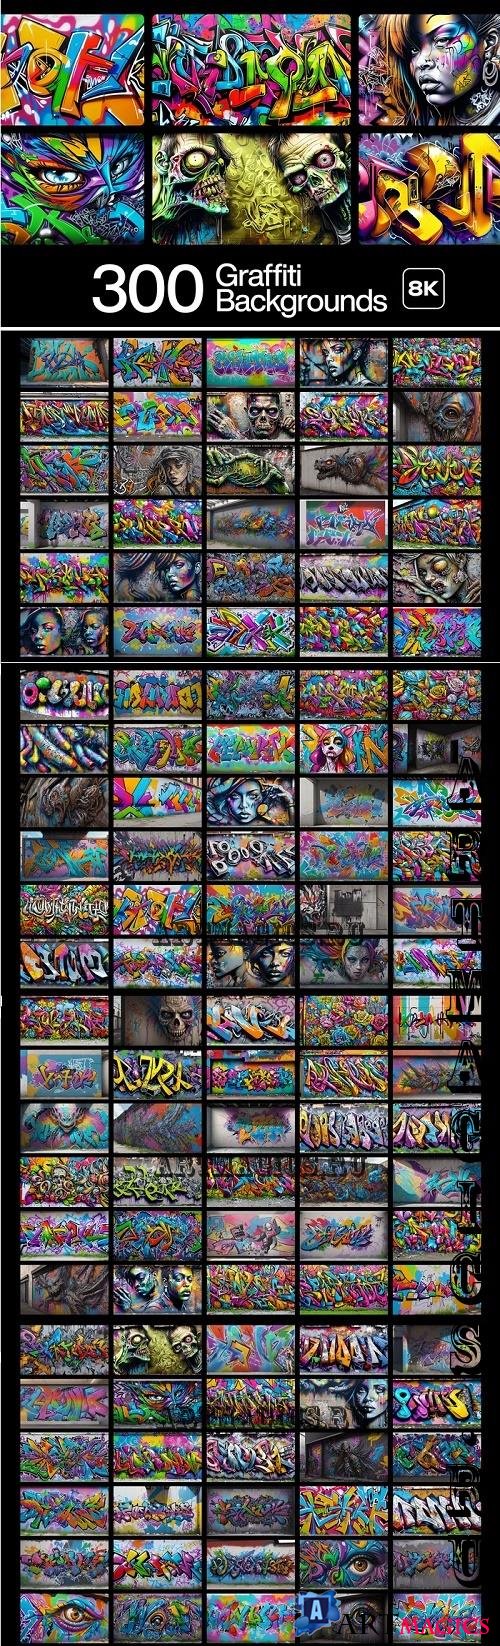 300 Graffiti Backgrounds